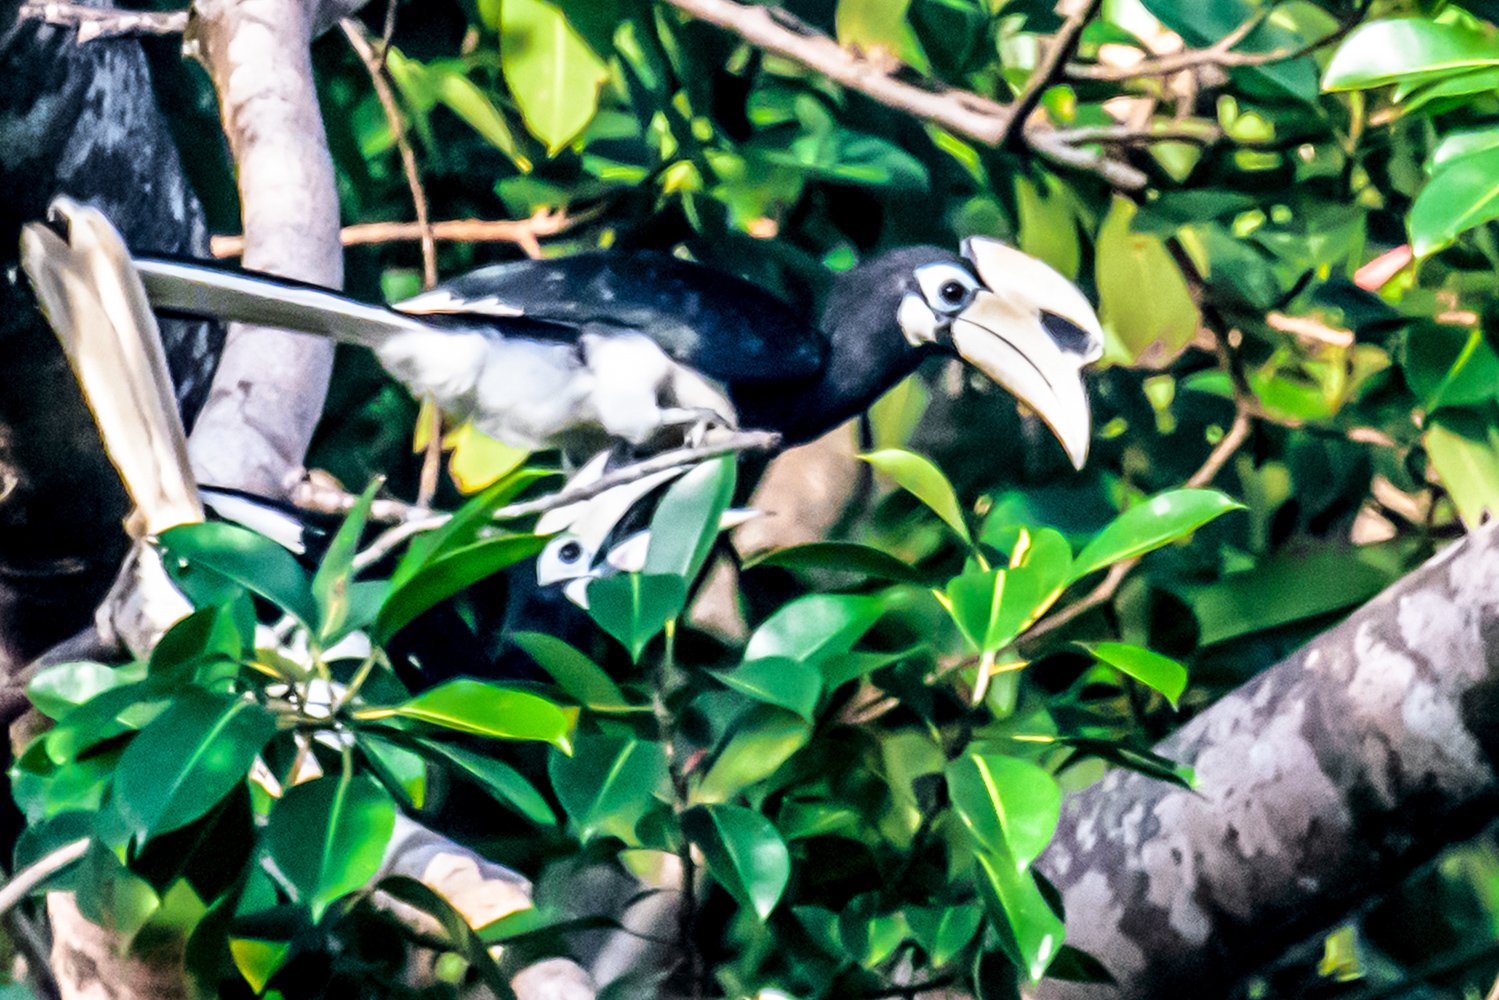 Burung Kangkareng perut putih (Anthratococeros albirostris) bertengger di dahan pohon di Taman Nasional Ujung Kulon, Banten. TNUK adalah salah satu Taman Nasional yang ada di Indonesia yang telah ditetapkan sebagai Situs Warisan Alam Dunia oleh UNESCO pada tahun 1992 dan merupakan perwakilan ekosistem hutan hujan tropis dataran rendah yang tersisa dan terluas di Jawa bagian barat.